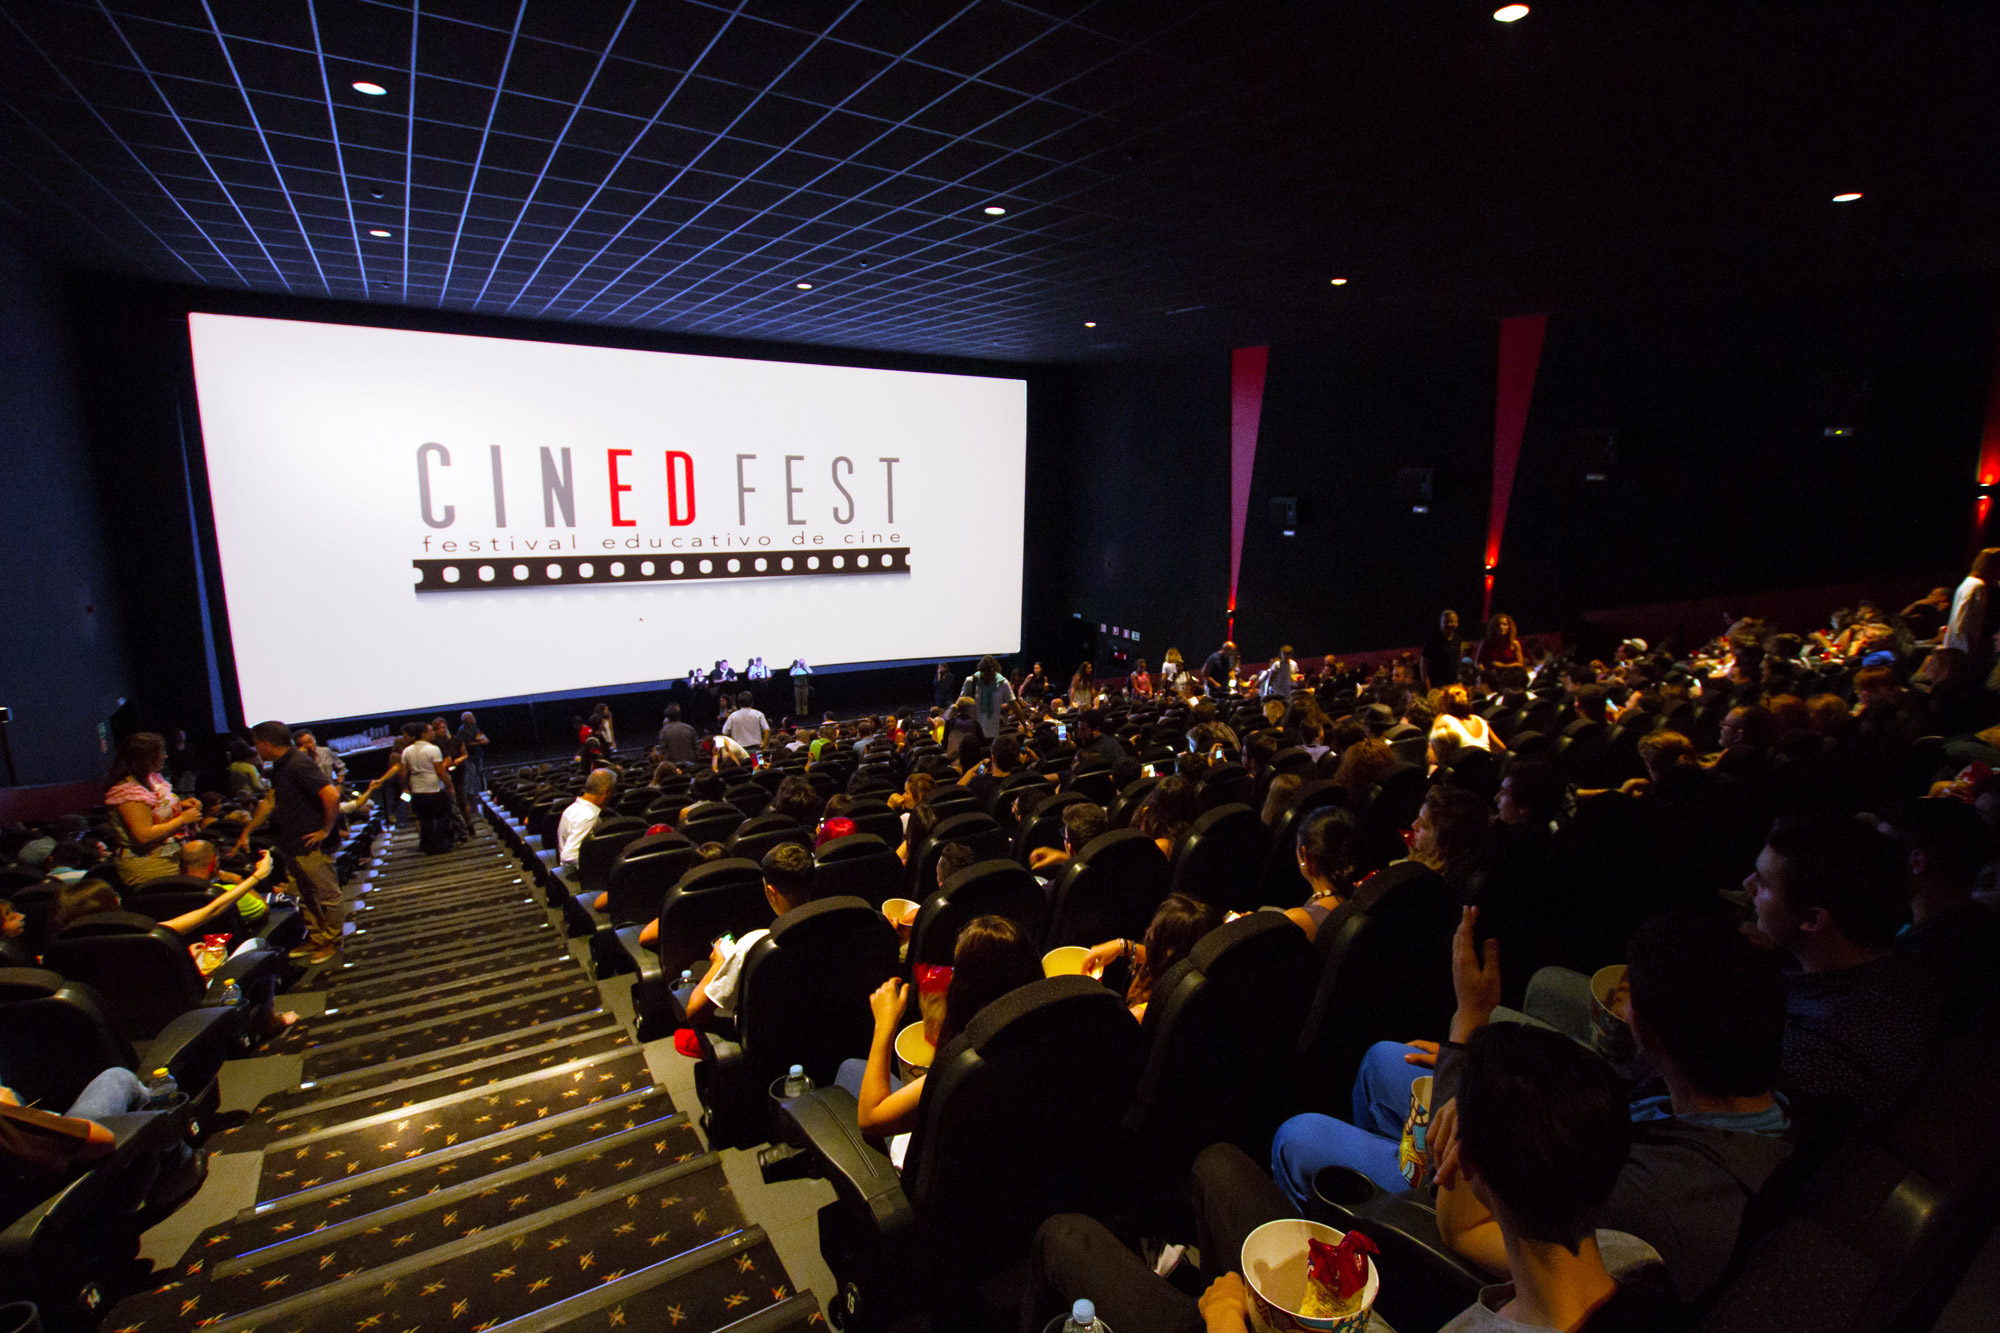 Cinedfest 5 selecciona sus 48 finalistas